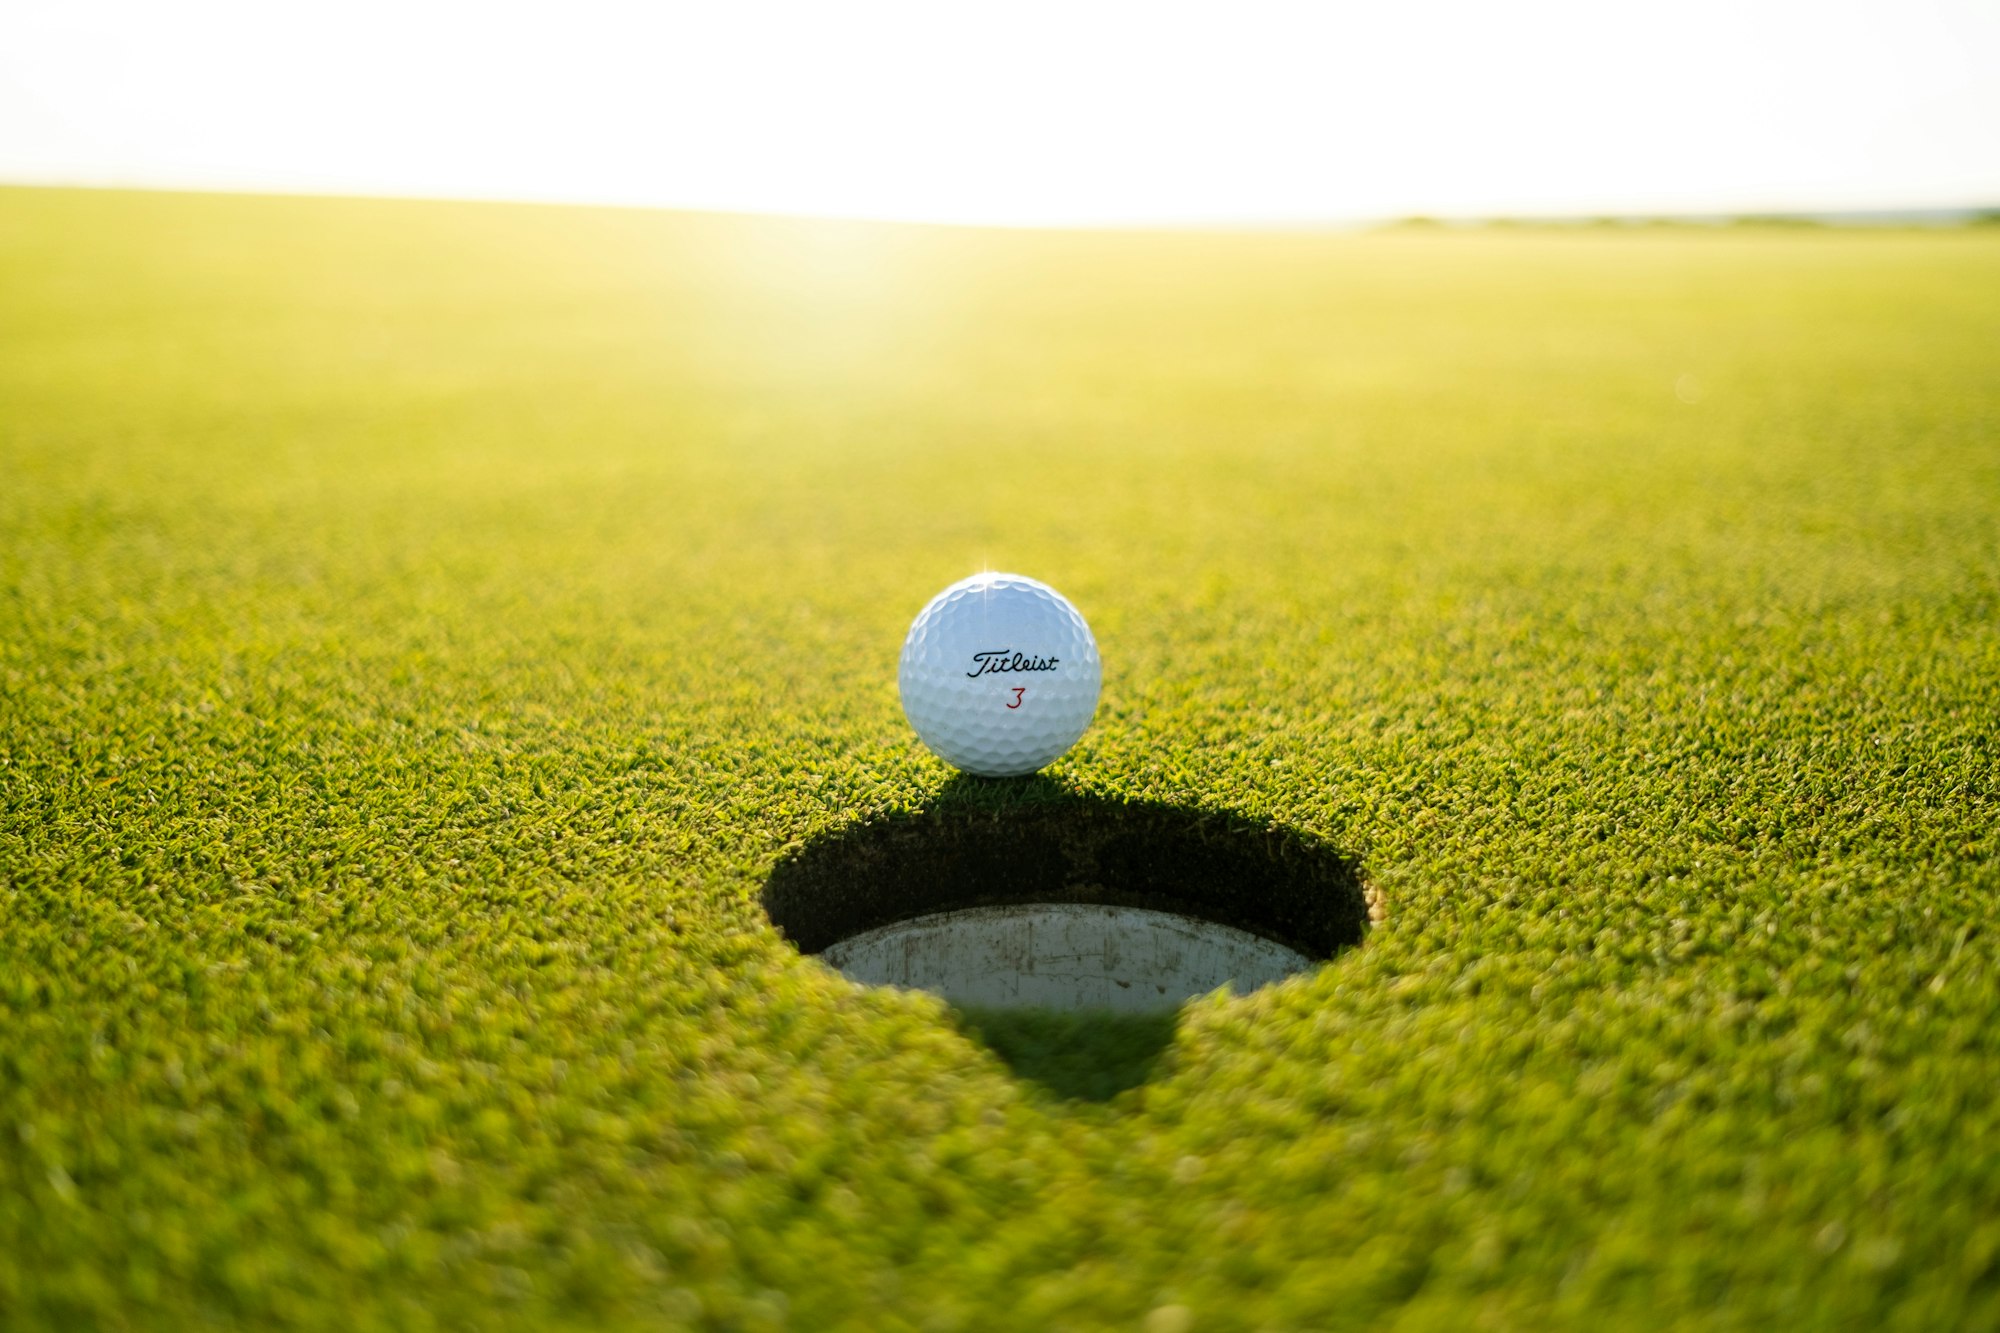 titleist golf ball on green grass field during daytime